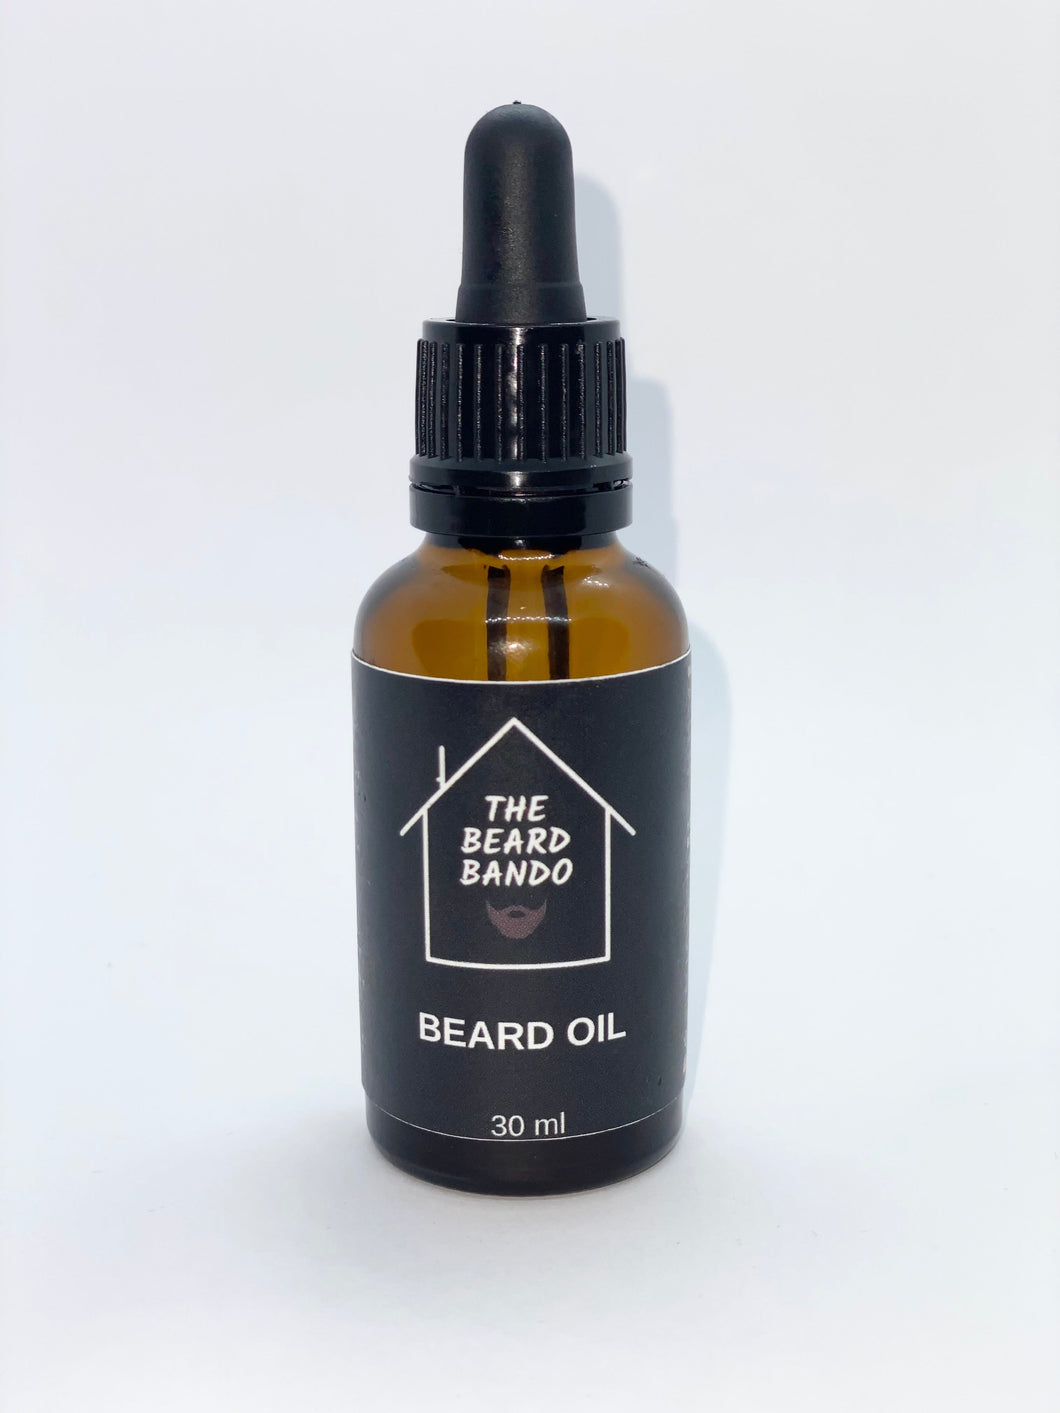 Bando Beard Oil #8 by The Beard Bando